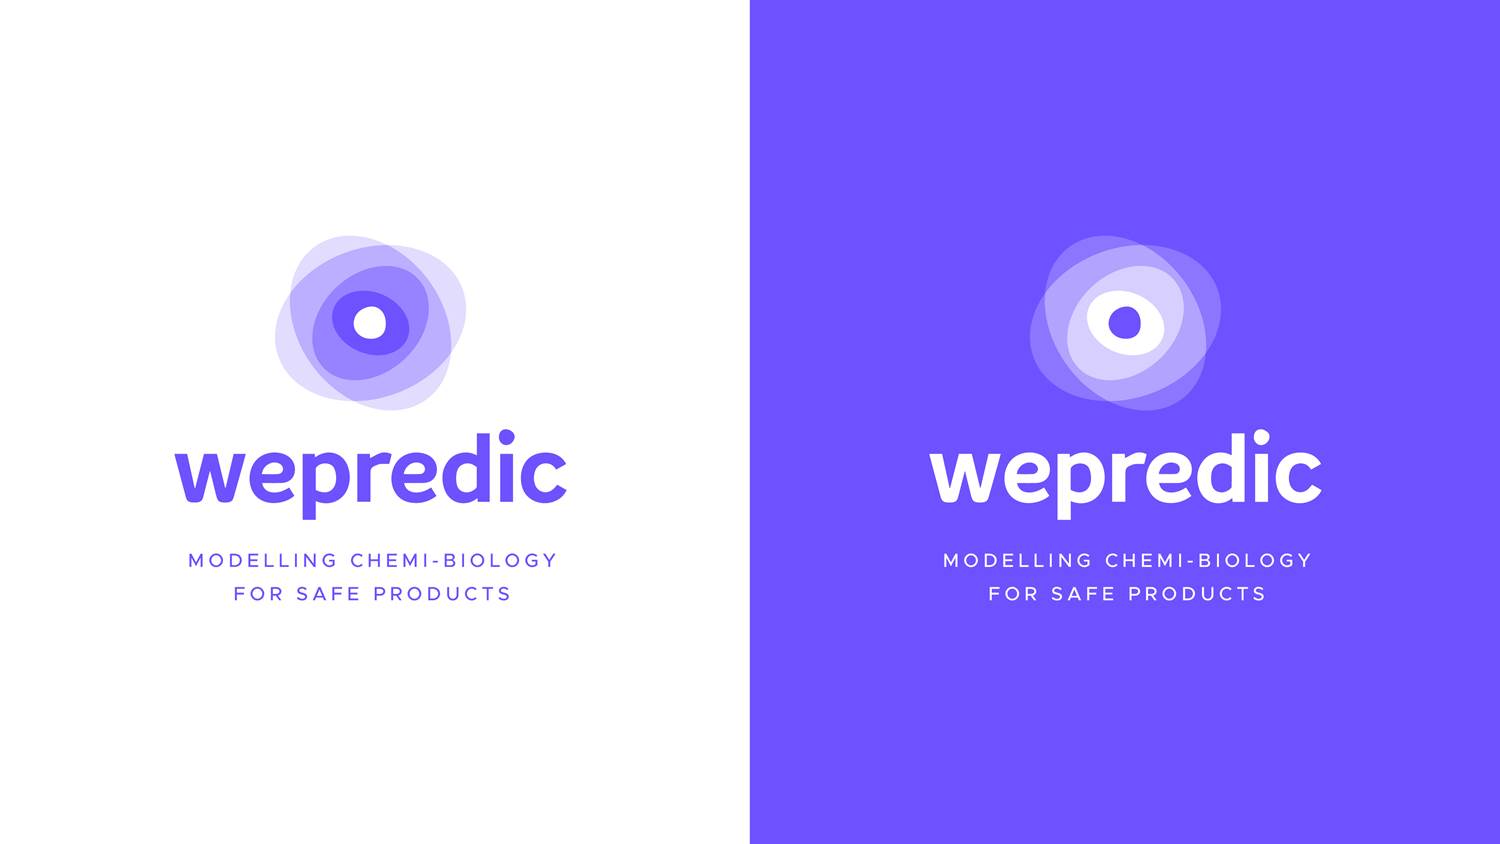 Lancement de Wepredic ! Groupe fédérateur d'acteurs des techno in vitro